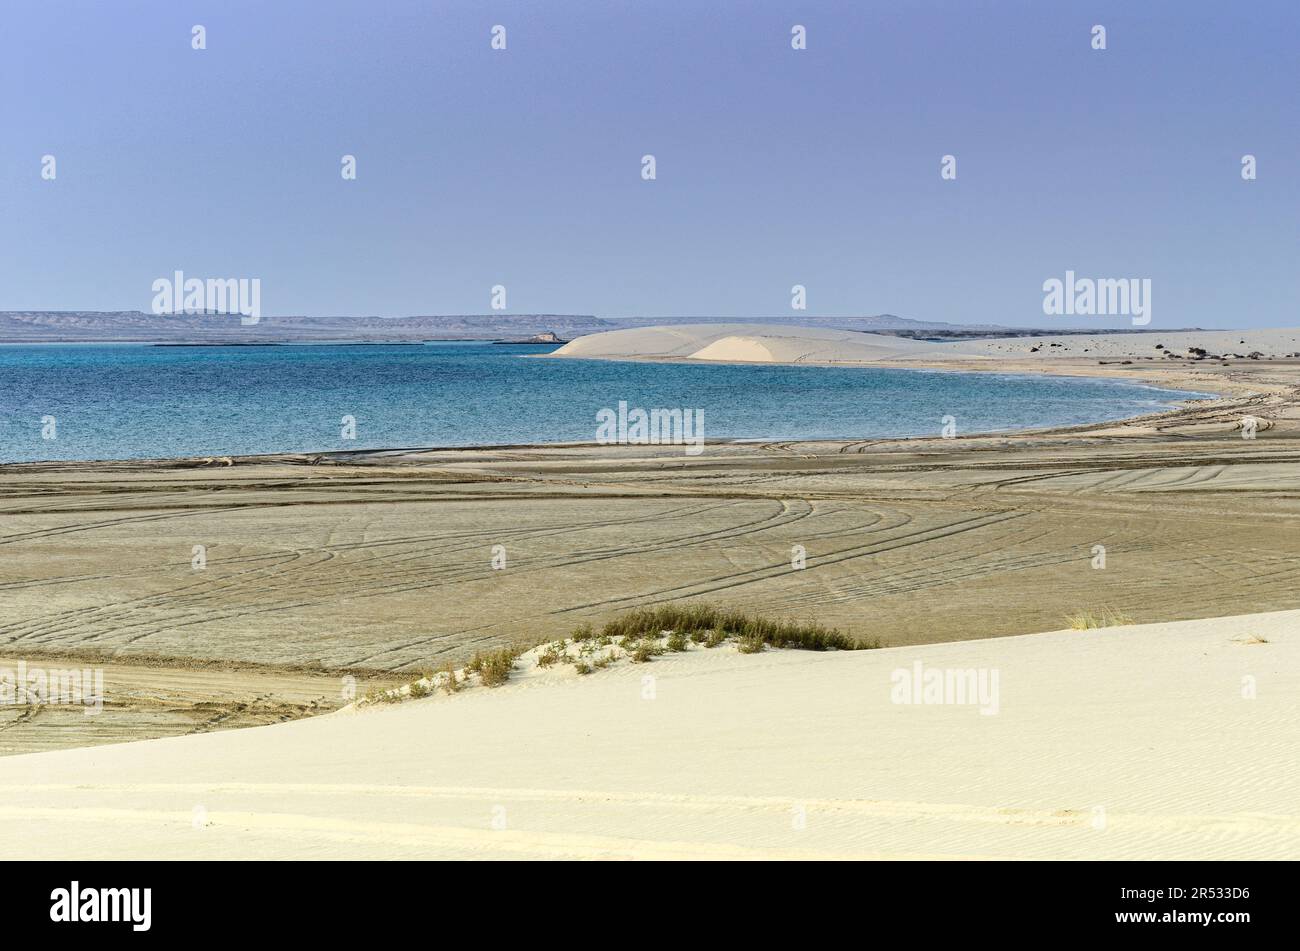 Dunes de sable descendant dans la crique des phoques avec des collines calcaires en arrière-plan à Al Adaid, Qatar Banque D'Images